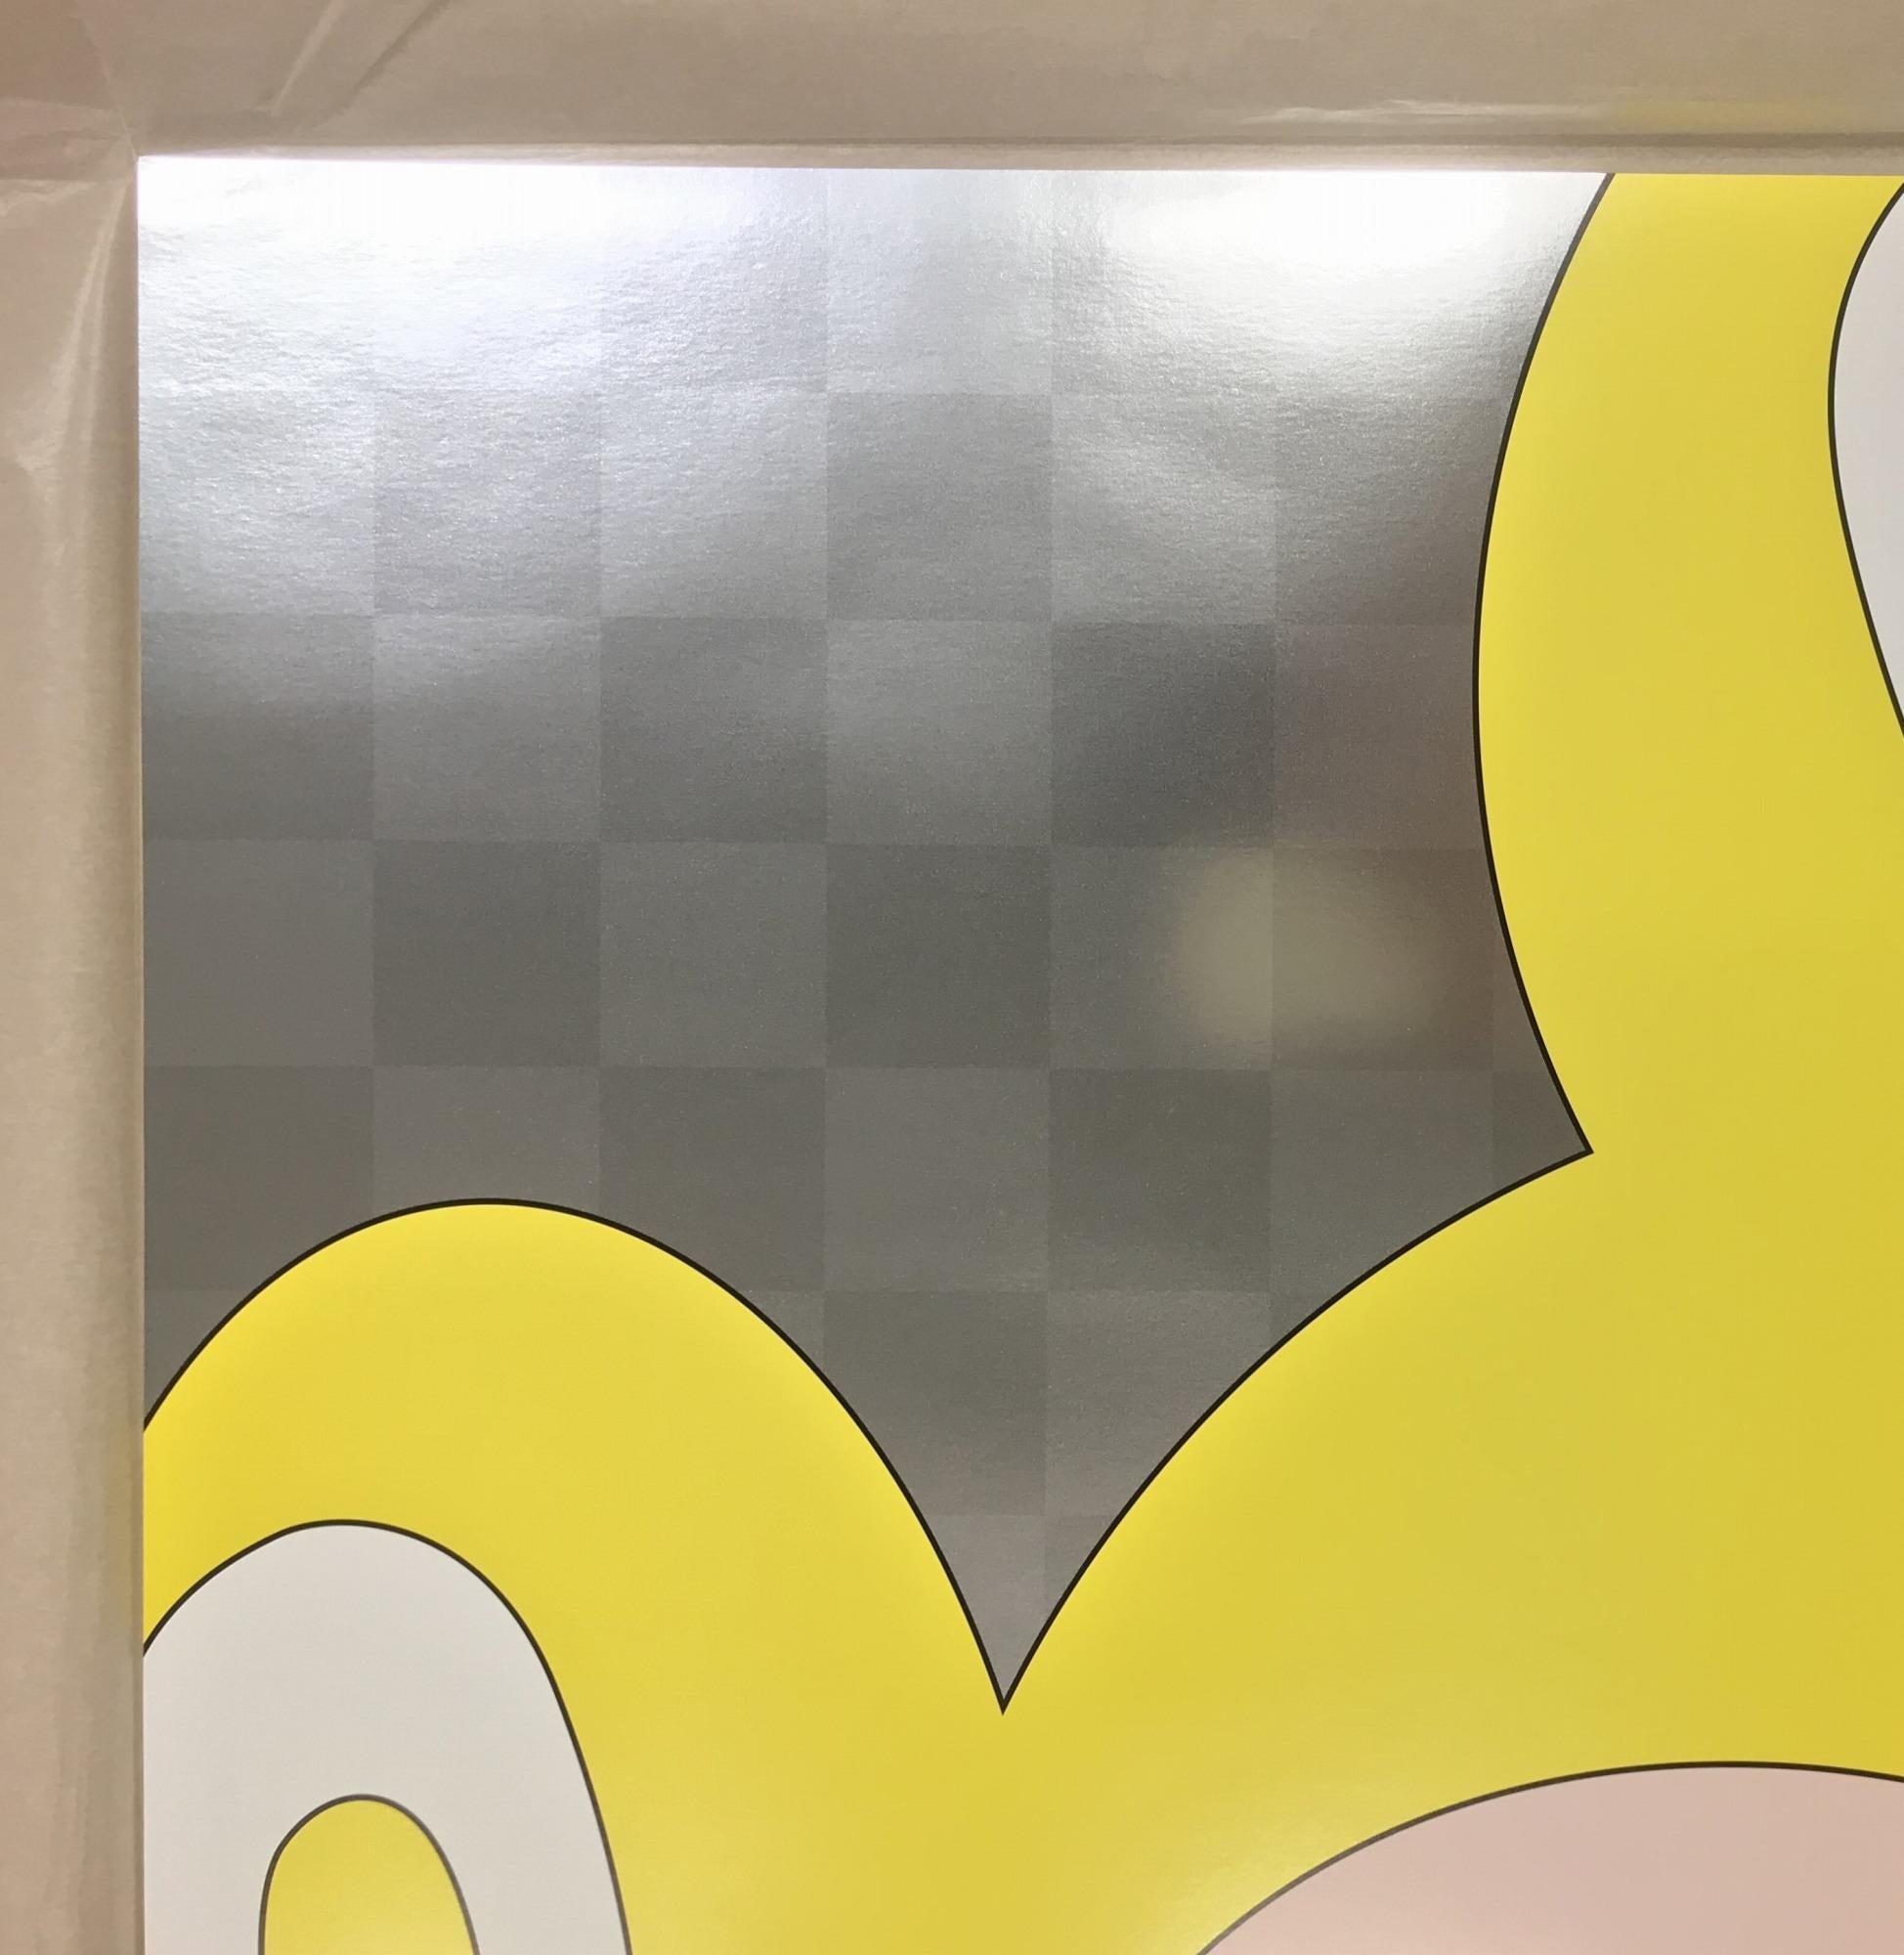 Et puis et puis et puis et puis et puis (Jaune), 1999 de Takashi Murakami
Impression offset, à l'encre argentée, signée et numérotée par l'artiste.
26 4/5 × 26 4/5 in
68 × 68 cm
Edition 135/300

Le design de Mr. DOB a été inspiré par plusieurs